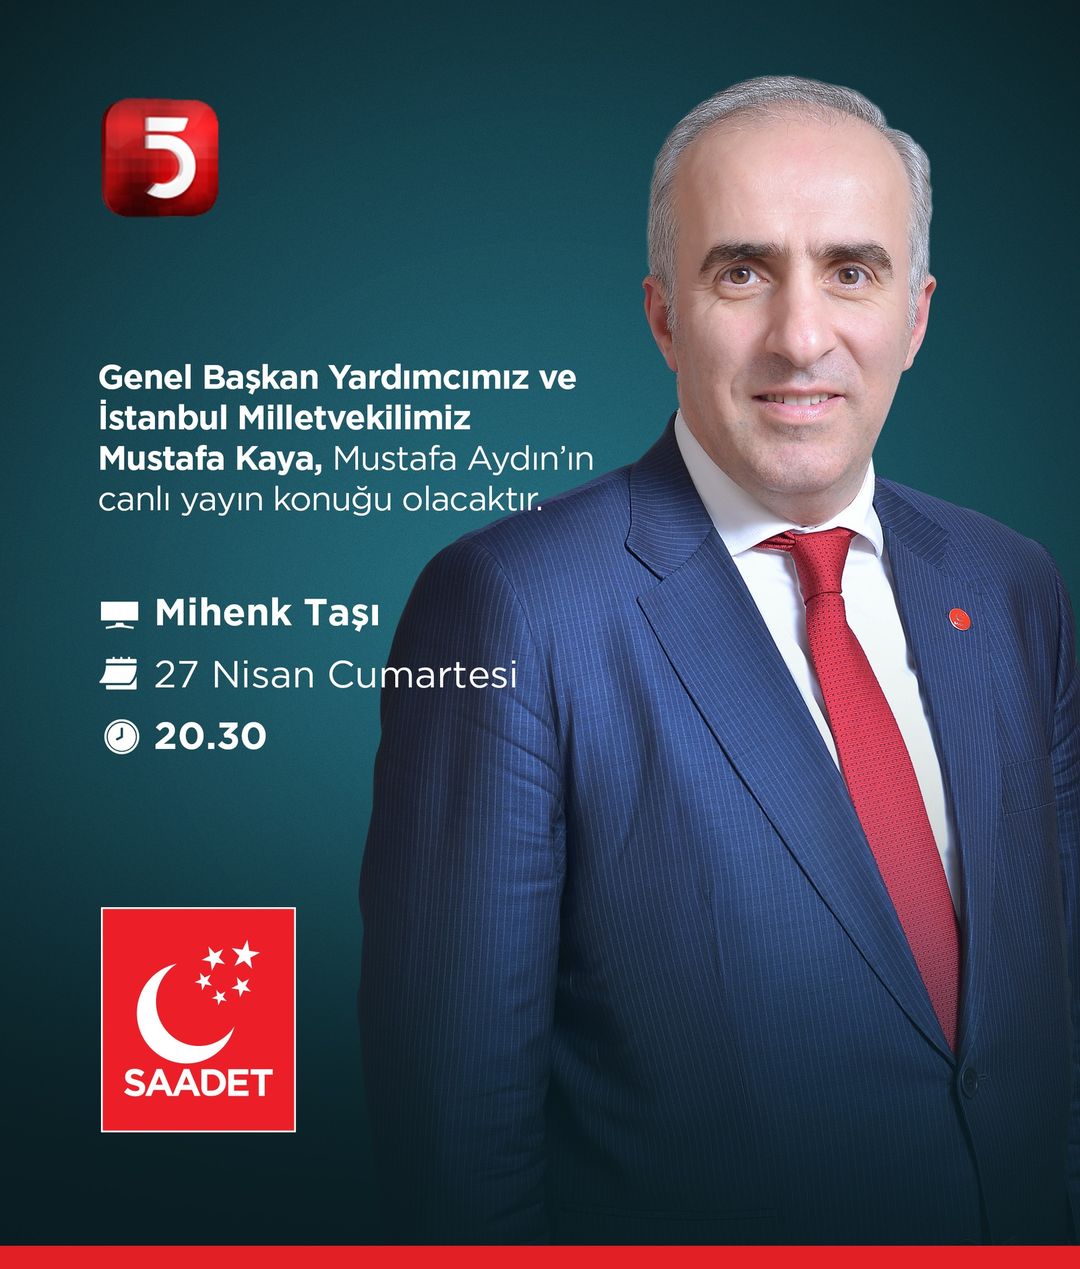 Saadet Partisi Genel Başkan Yardımcısı Mustafa Kaya, Mihenk Taşı Programında Açıklamalarda Bulunacak